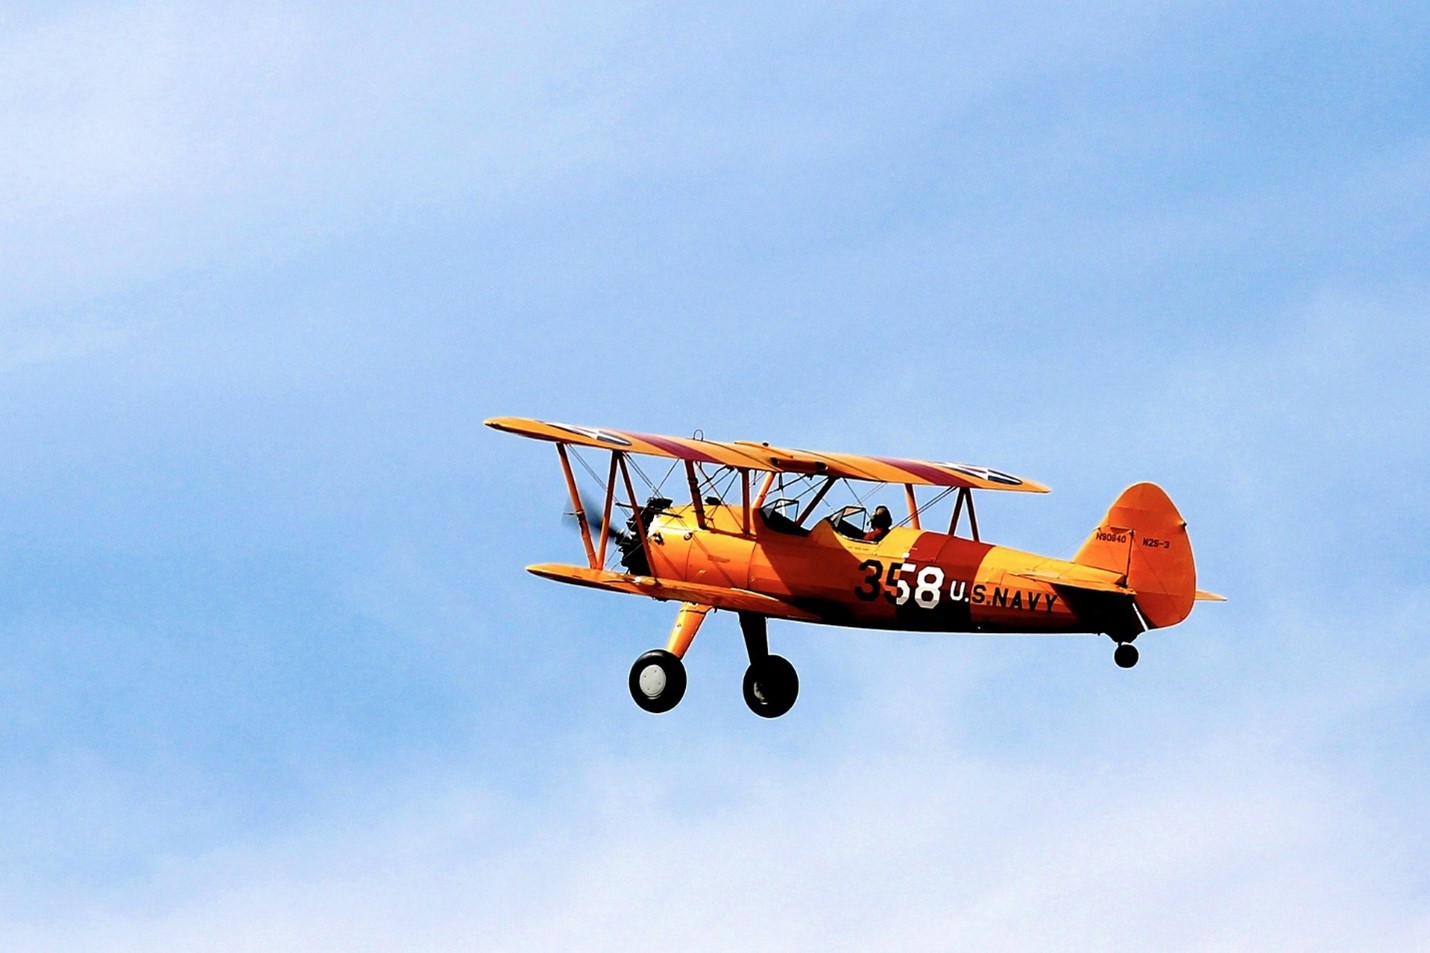 Orange biplane in blue sky